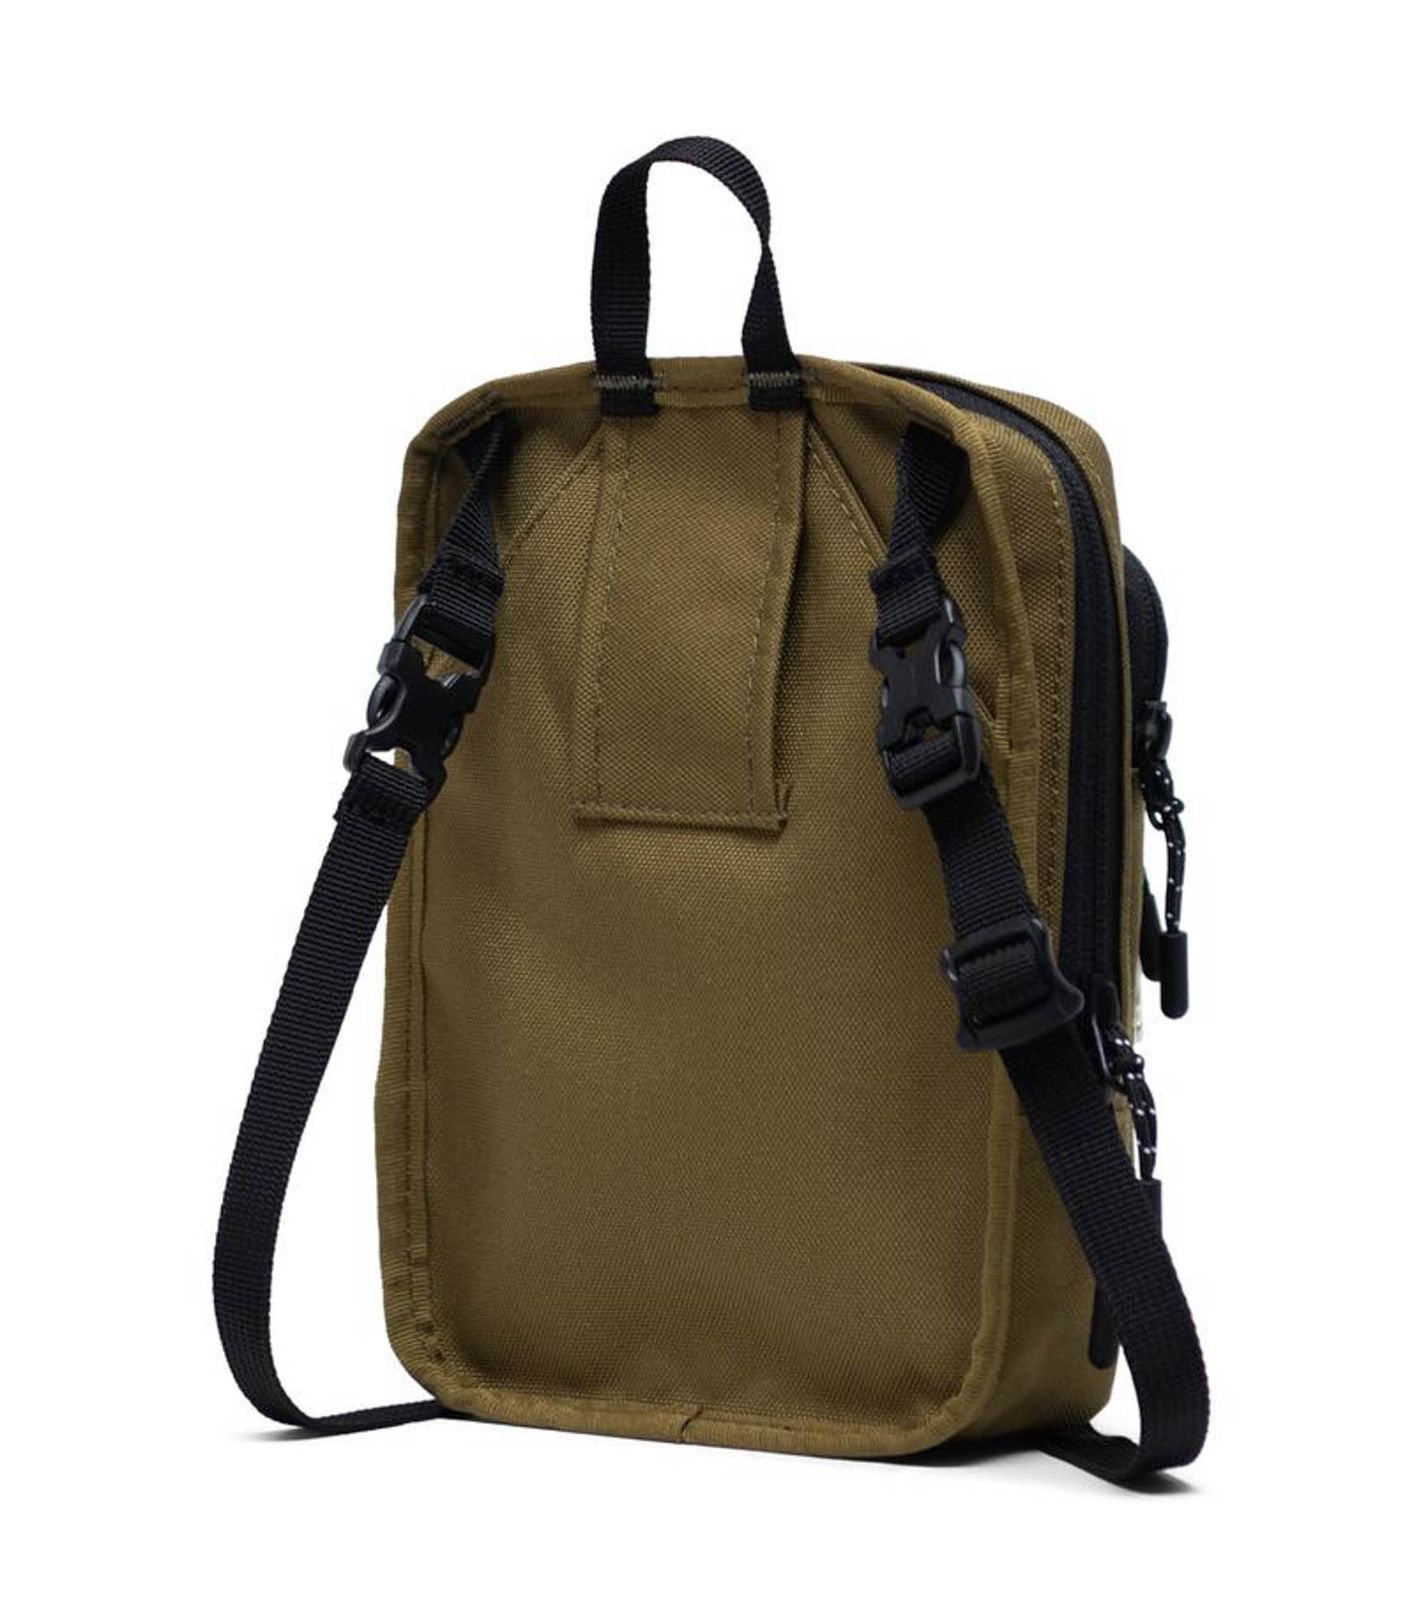 Herschel Crossbody Khaki Green Buy Bags Purses Accessories Online 